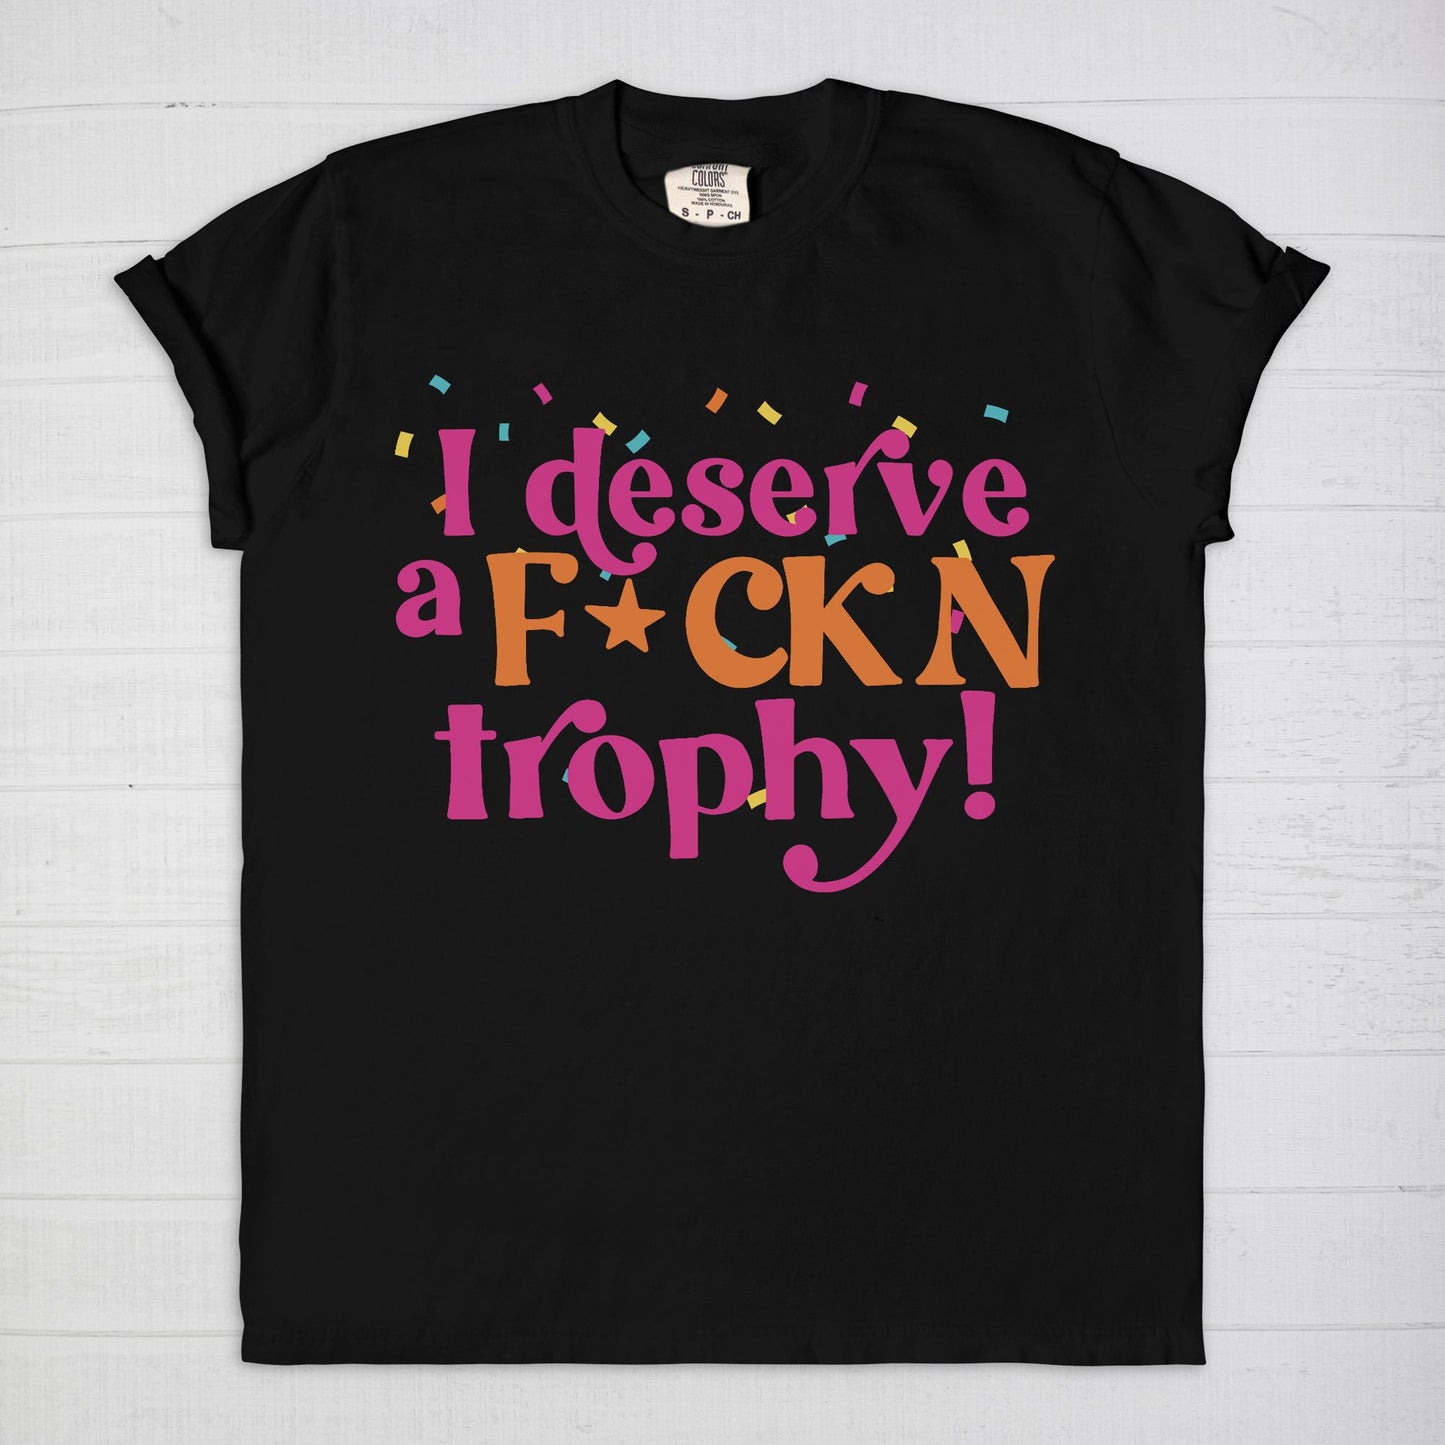 Fckn trophy shirt